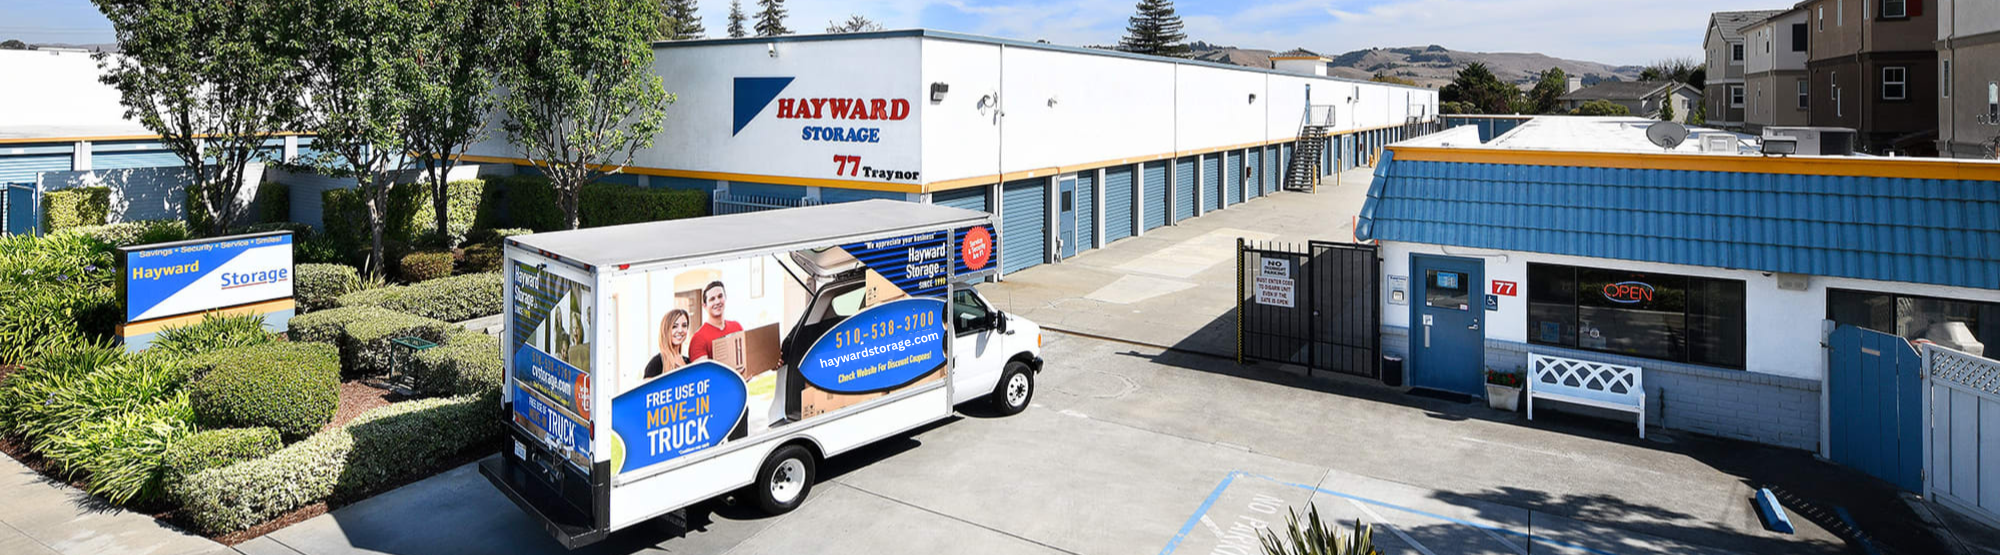 Hayward Storage in Hayward, CA 94544